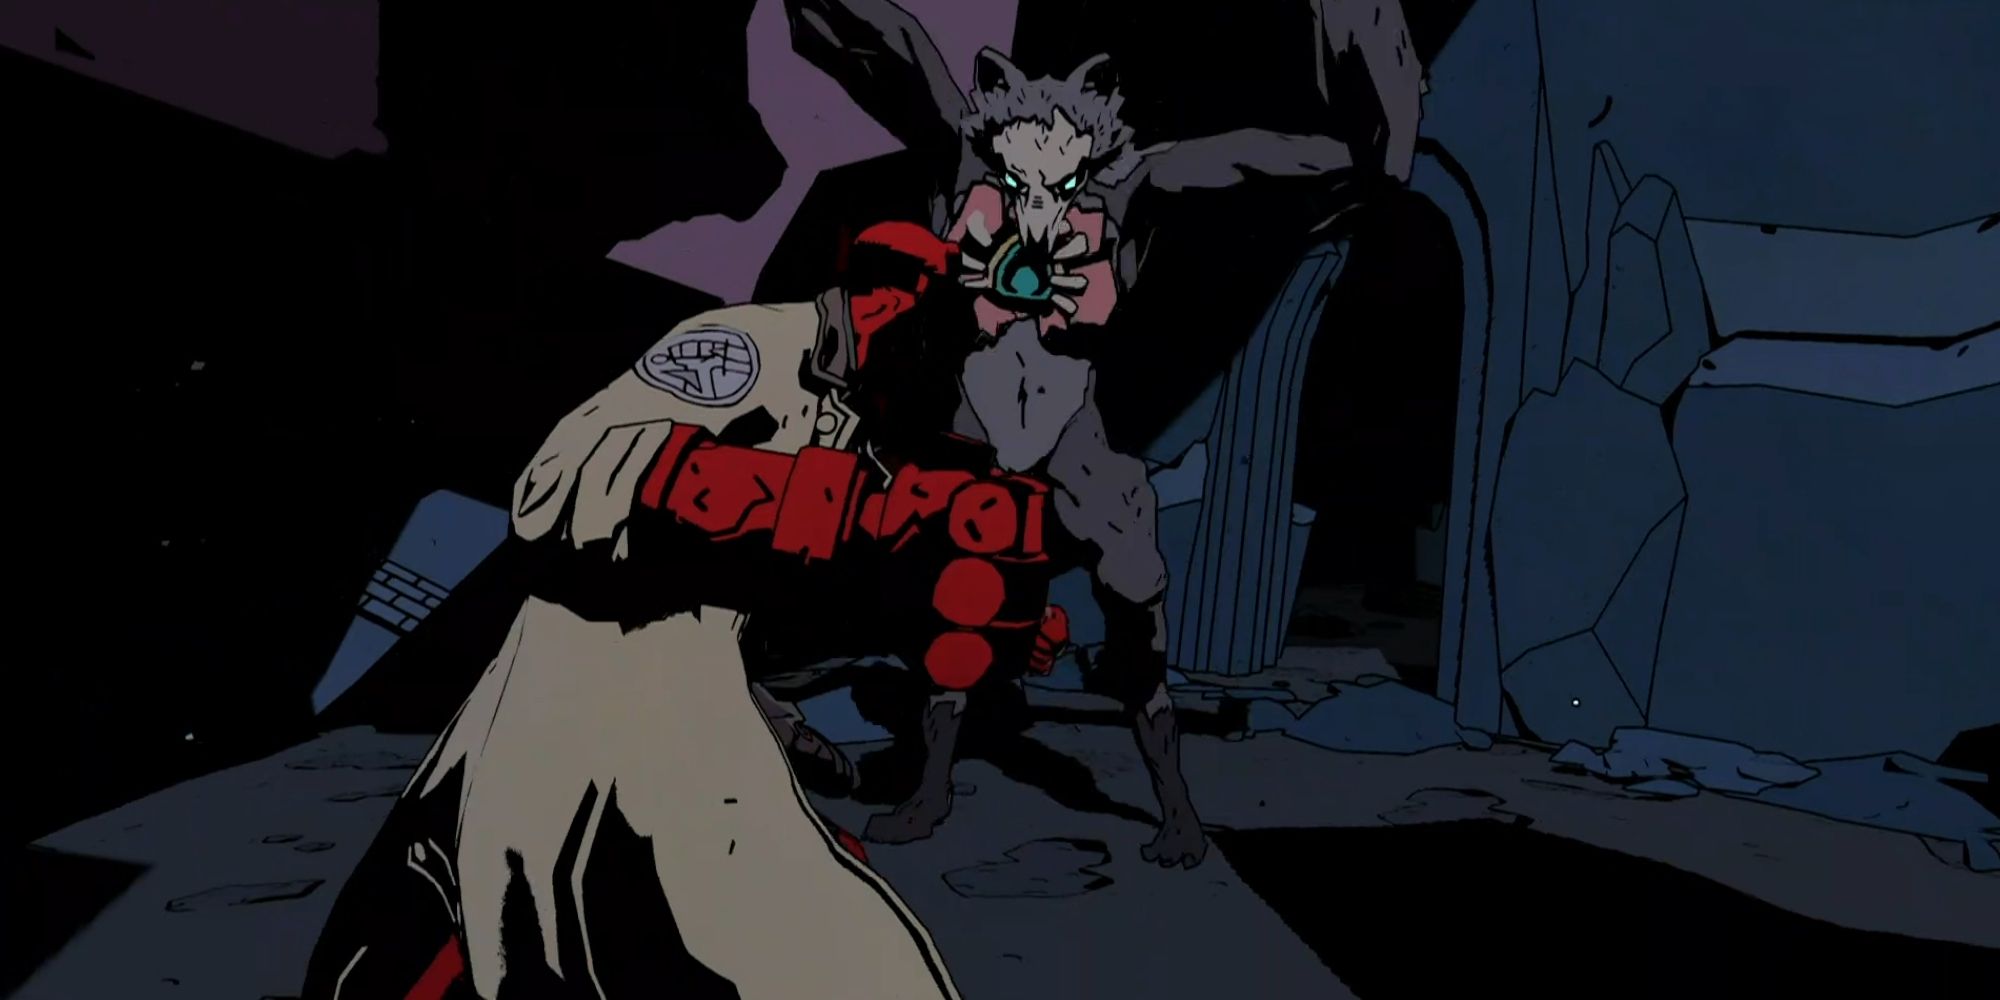 hellboy web of wyrd hellboy fighting a giant wolf